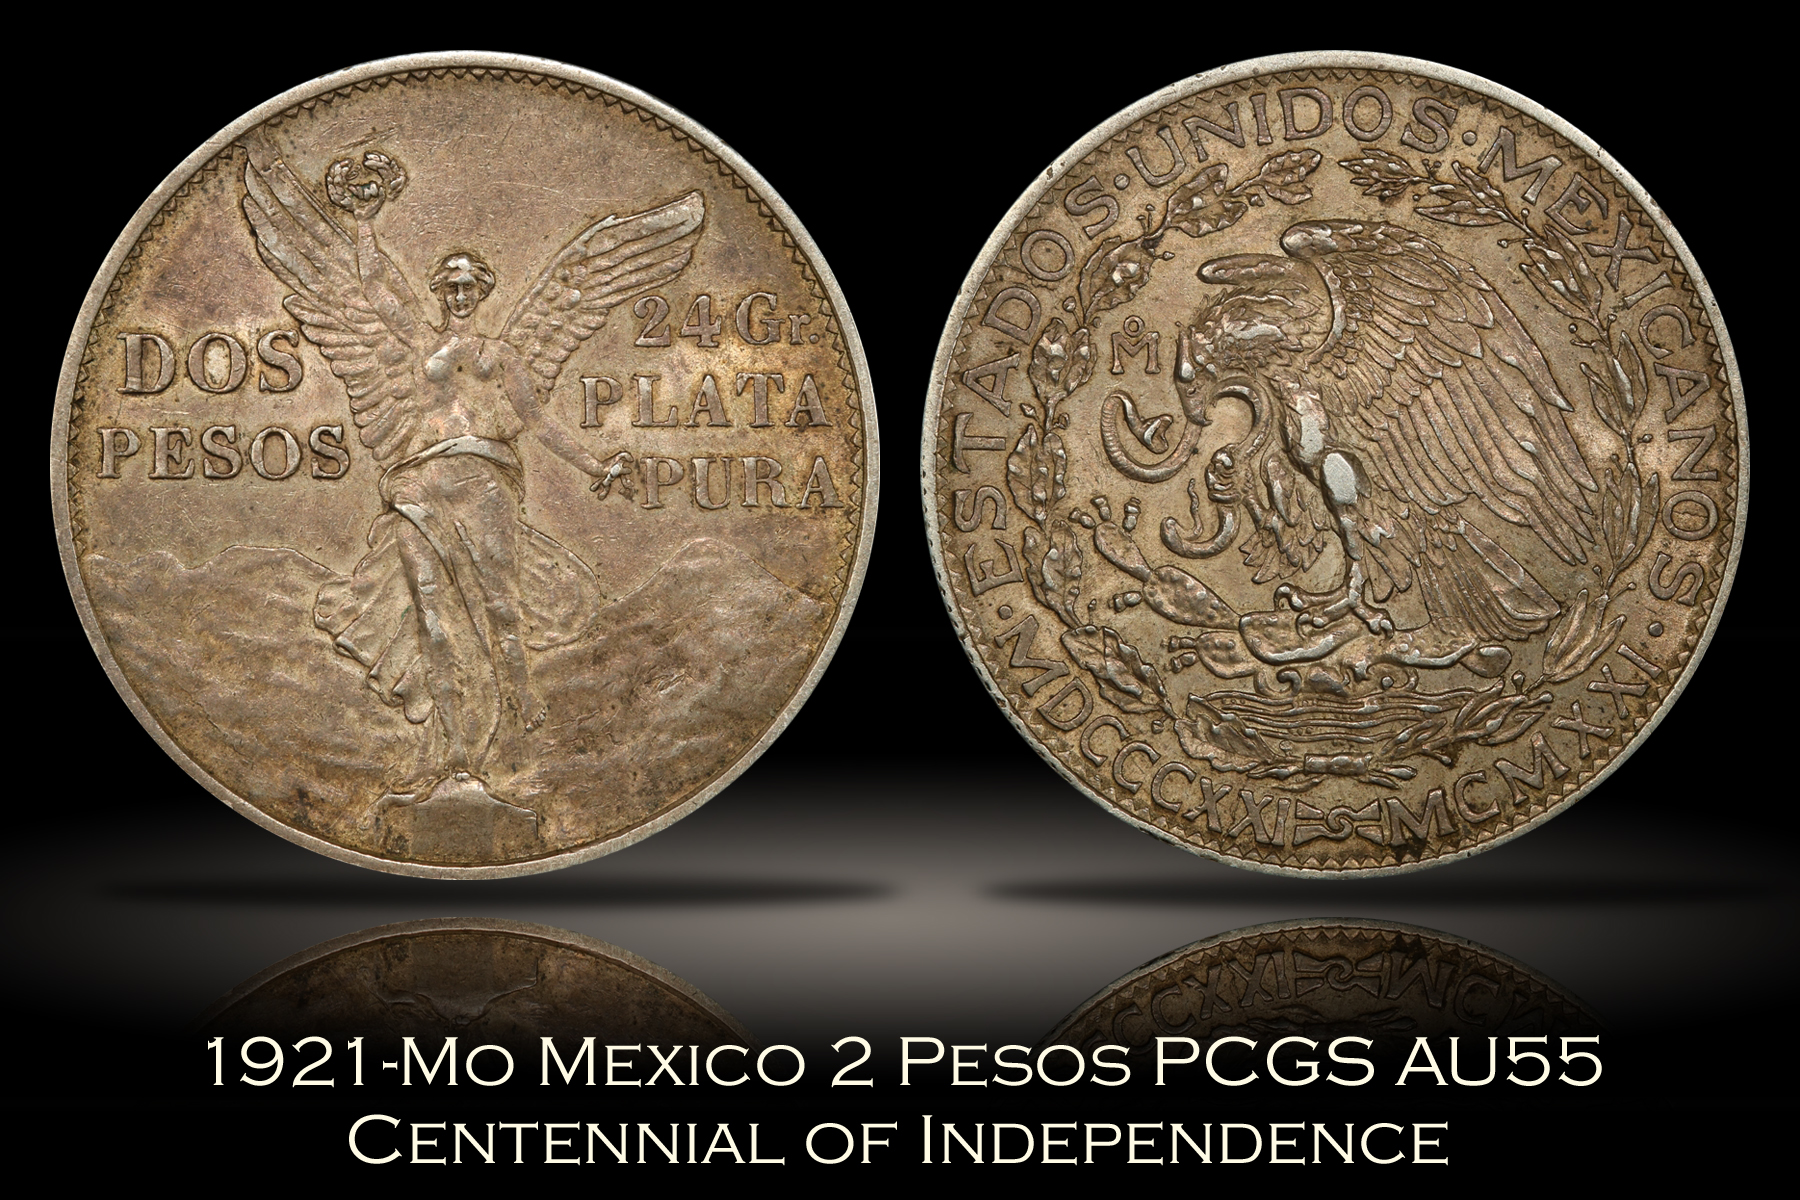 1921-Mo Mexico 2 Peso PCGS AU55